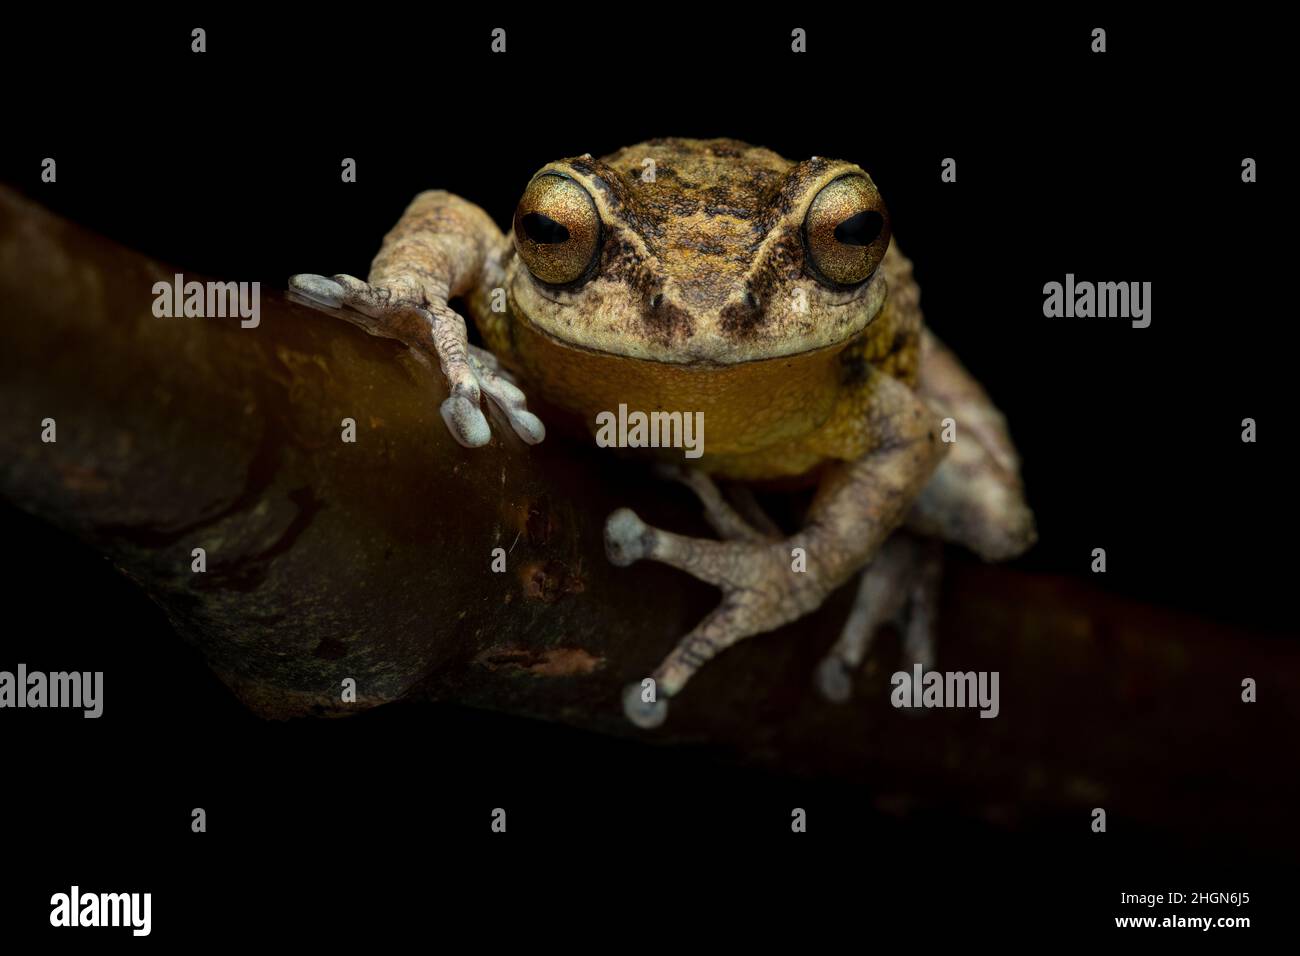 Portrait macro d'un Raorgestes munnarensis en danger critique d'extinction avec un fond noir et un éclairage uniformément diffusé montrant la grenouille perchée Banque D'Images